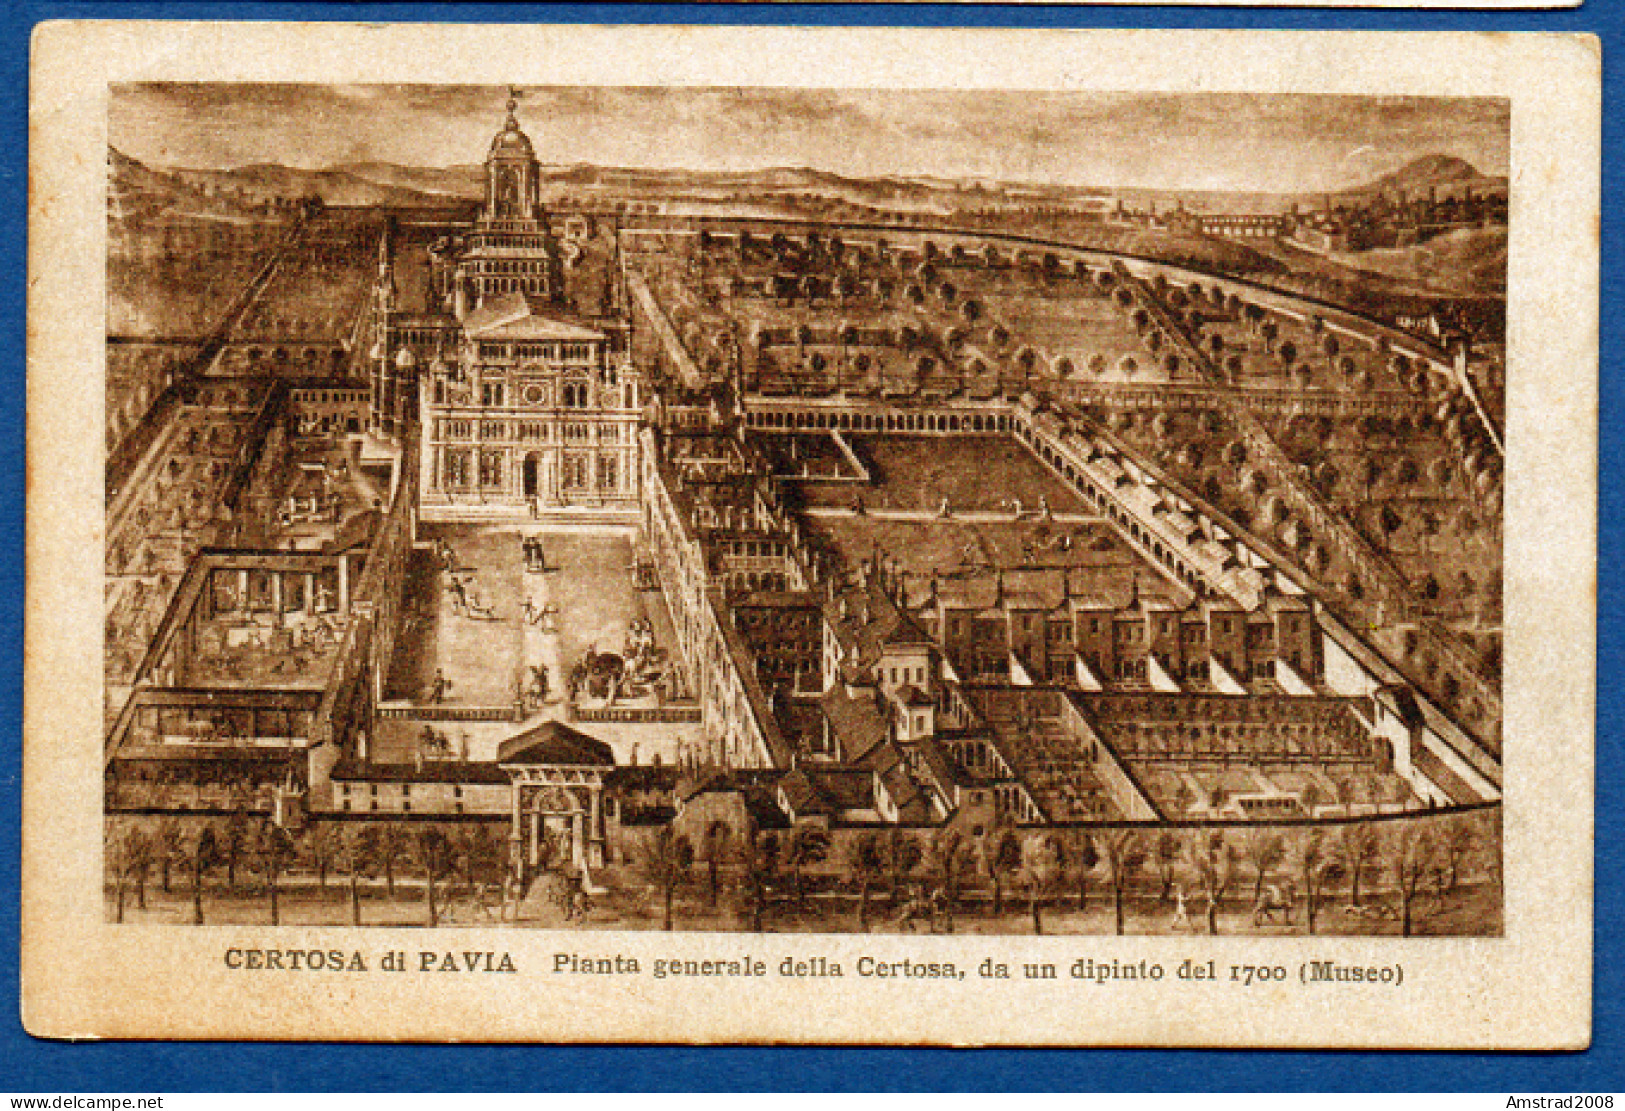 CERTOSA DI PAVIA - POANTA  GENERALE DELLA CERTOSA, DA UN DIPINTO DEL 1700  - ITALIE - Pavia